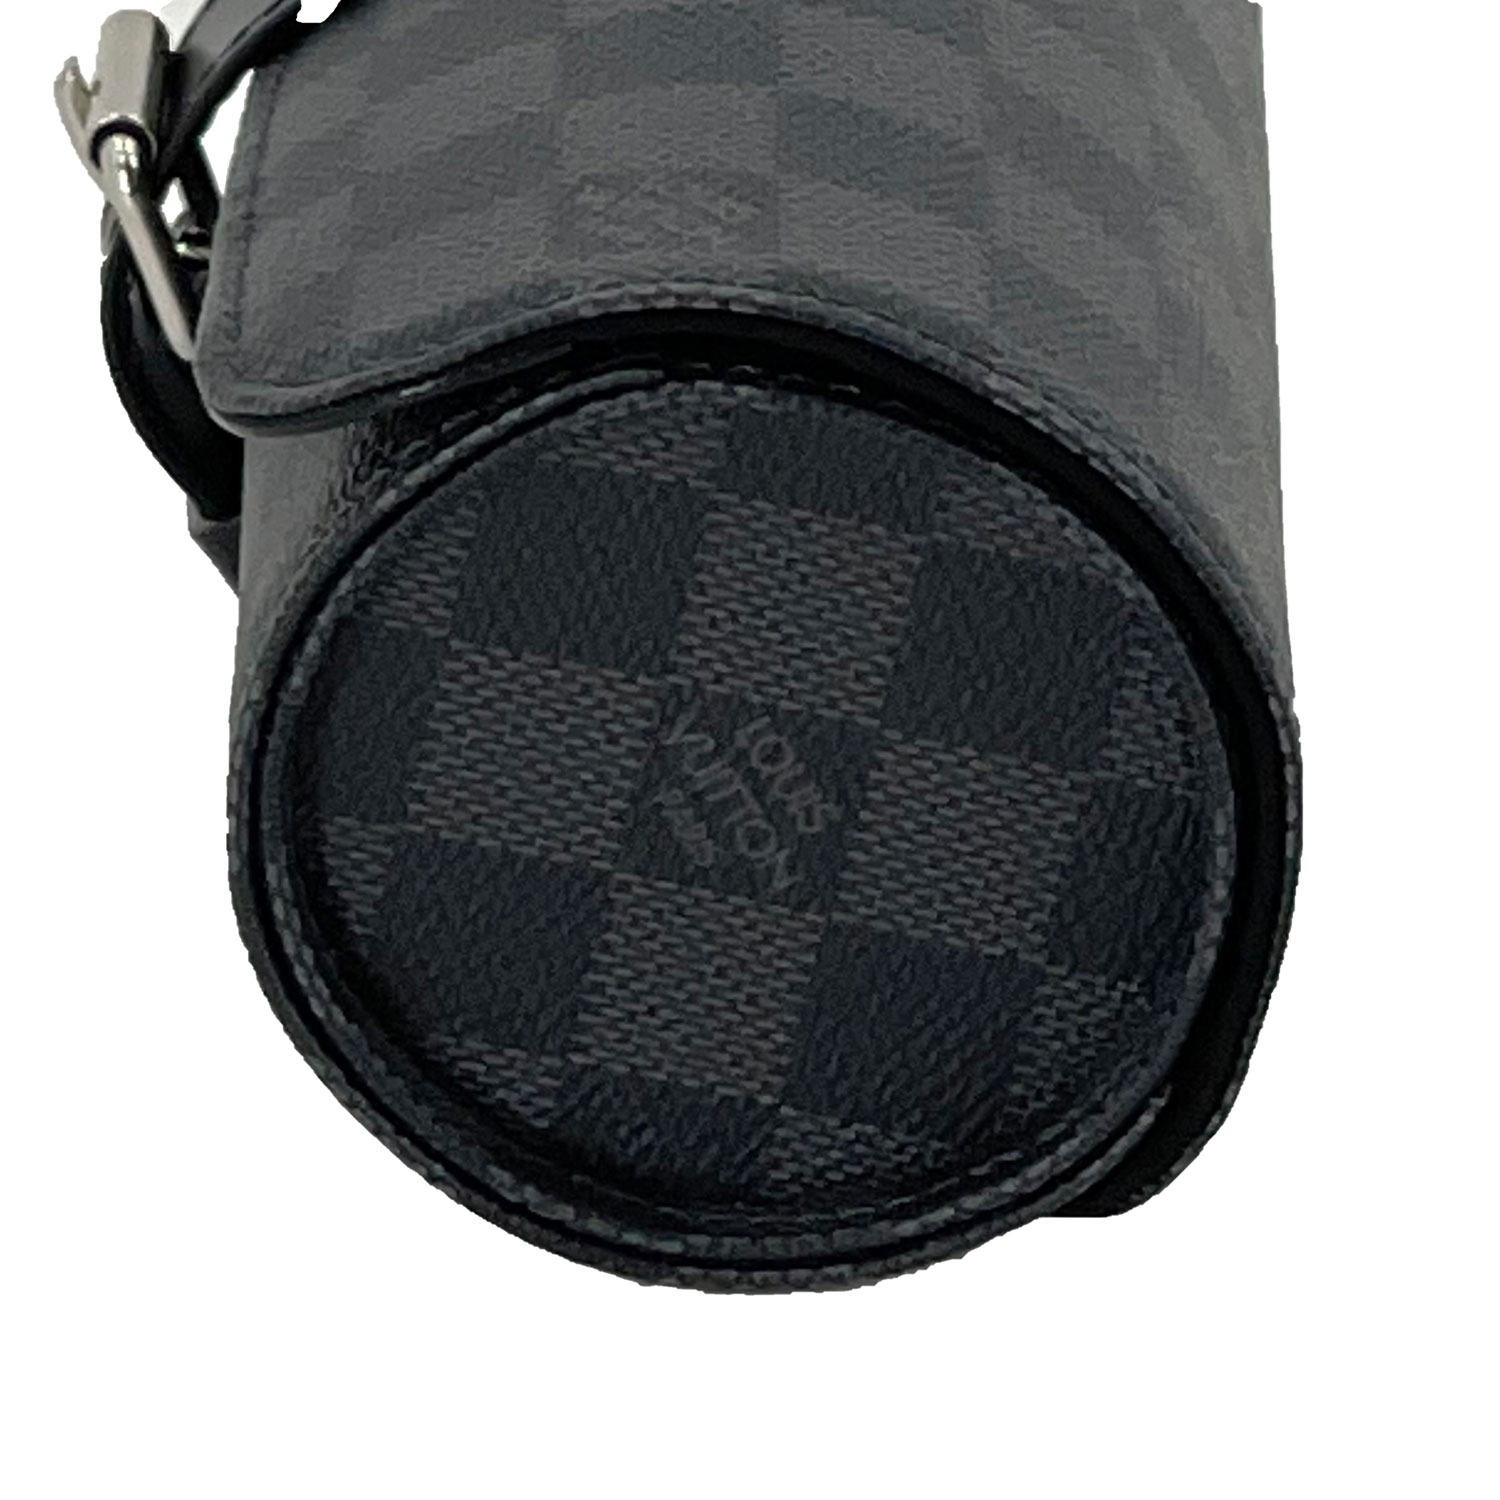 Louis Vuitton Damier Graphite 3 Watch Case - Black Travel